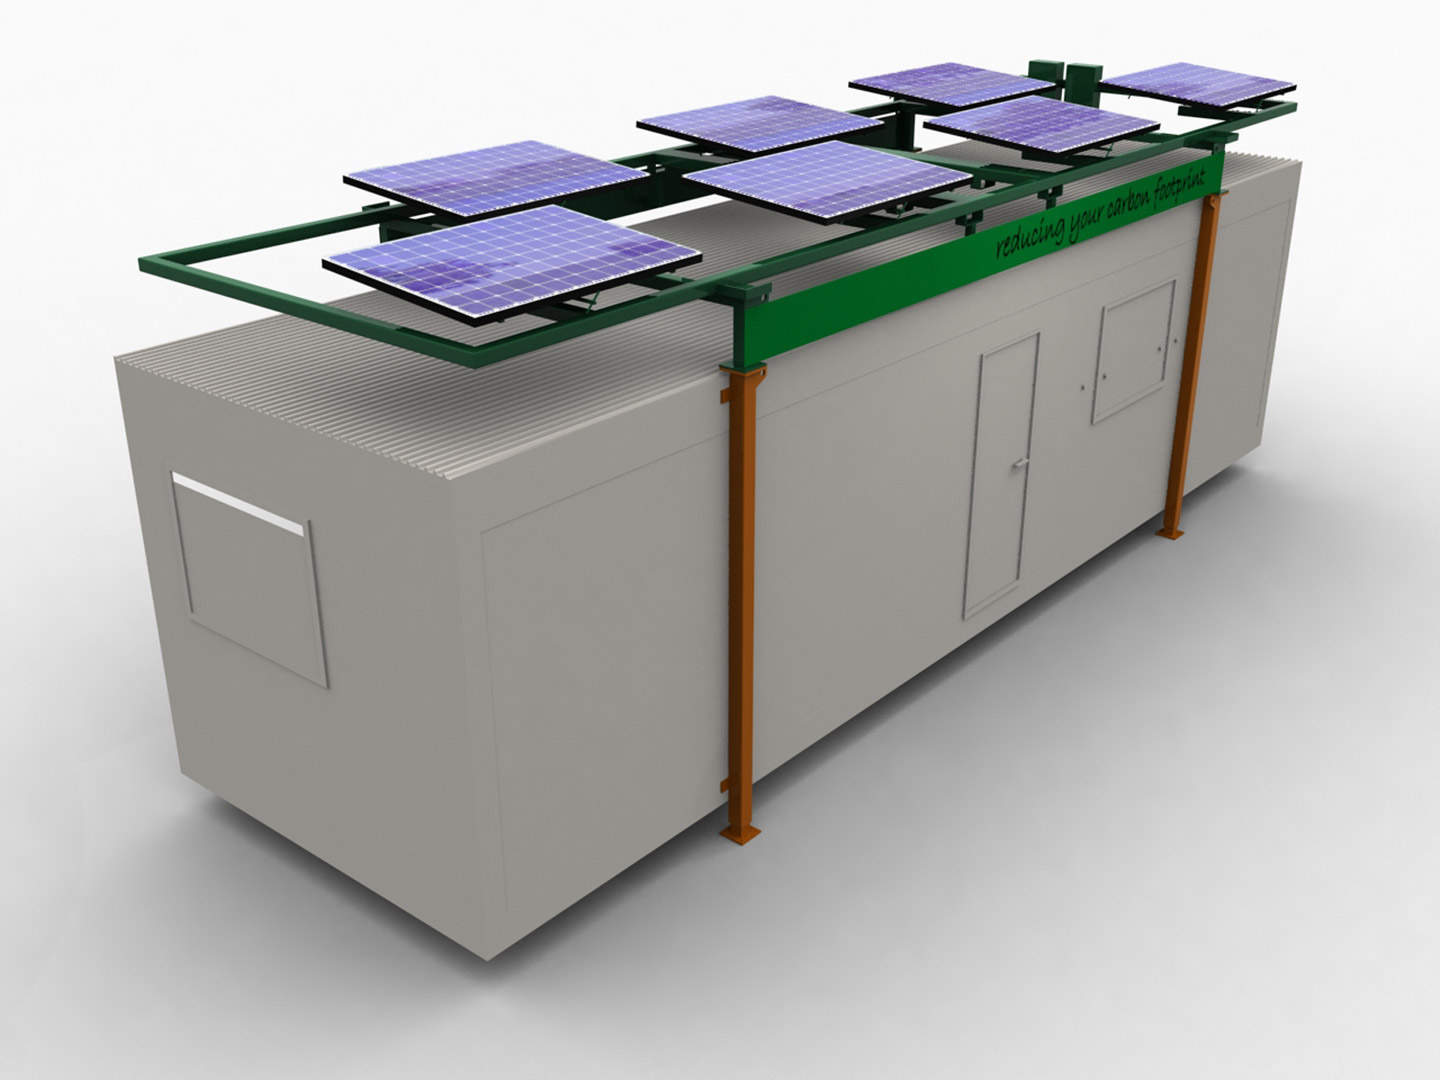 Powaframe. The innovative green energy solution for modular buildings.